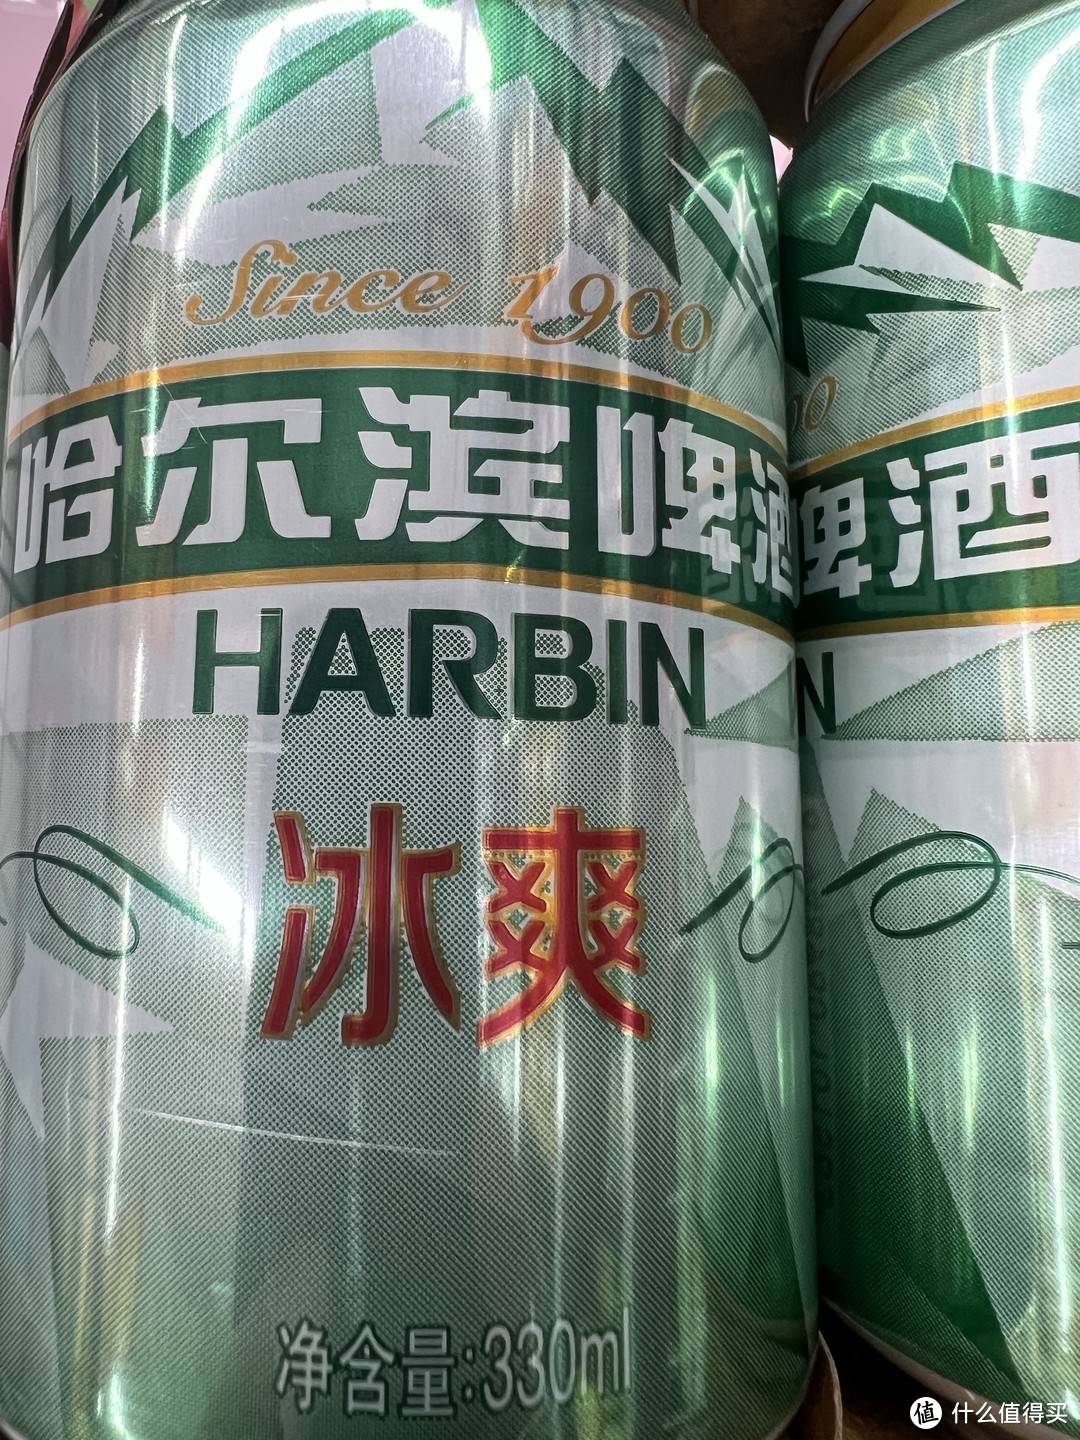 回忆一下学生时代喝的哈尔滨冰爽啤酒！